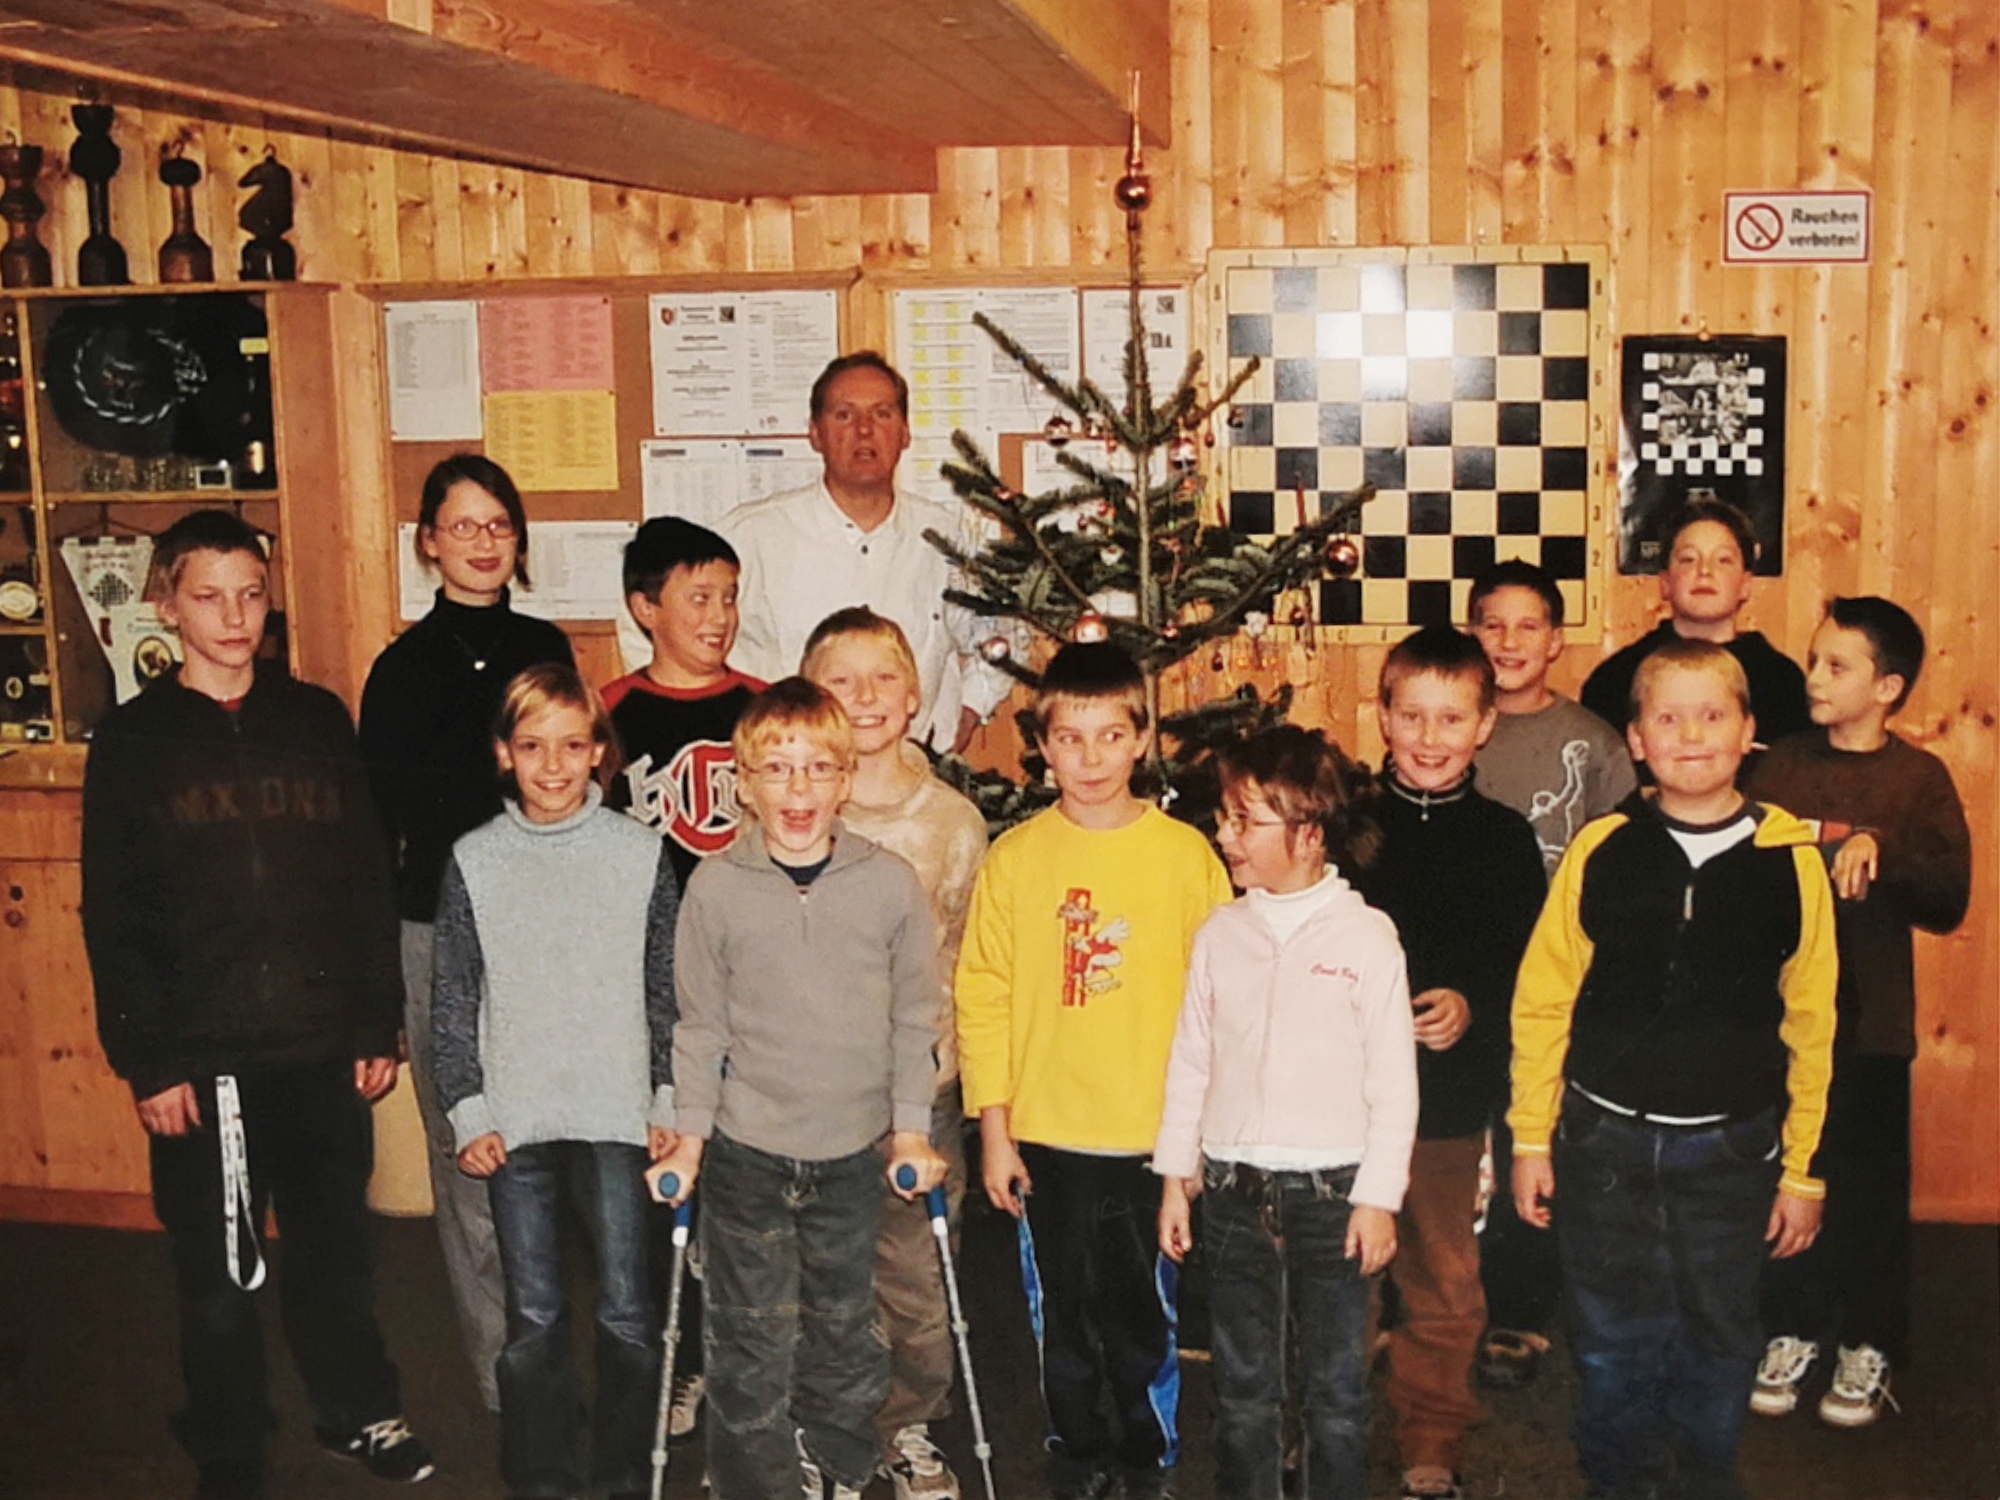 Weihnachtsfeier 2004